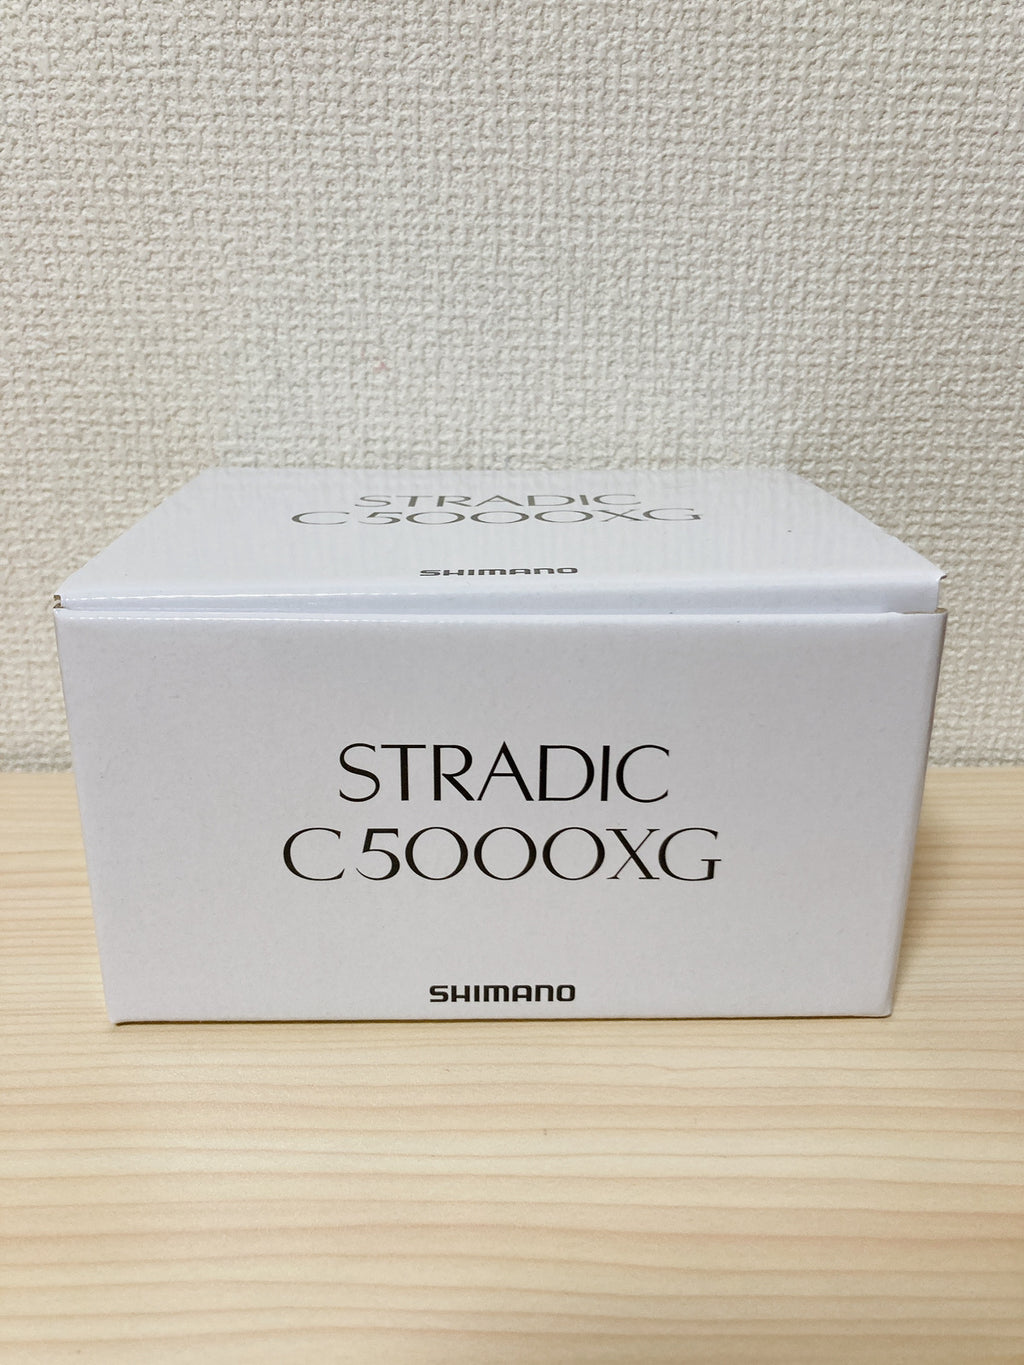 Shimano Spinning Reel 19 STRADIC C5000XG Gear Ratio 6.2:1 Fishing Reel IN  BOX